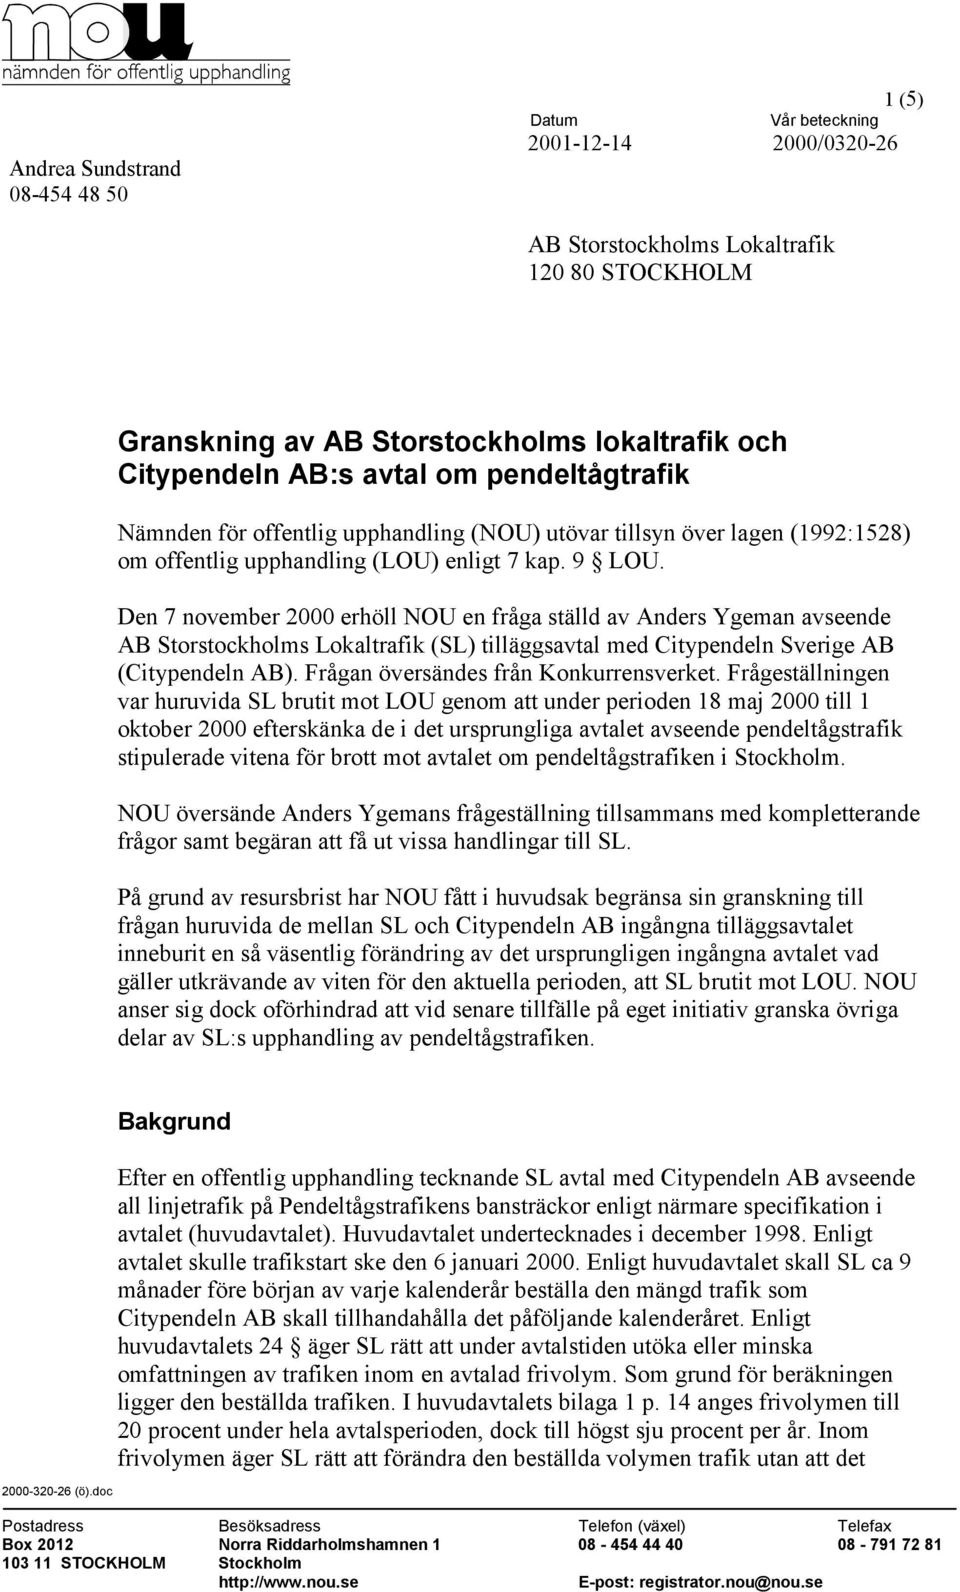 Den 7 november 2000 erhöll NOU en fråga ställd av Anders Ygeman avseende AB Storstockholms Lokaltrafik (SL) tilläggsavtal med Citypendeln Sverige AB (Citypendeln AB).